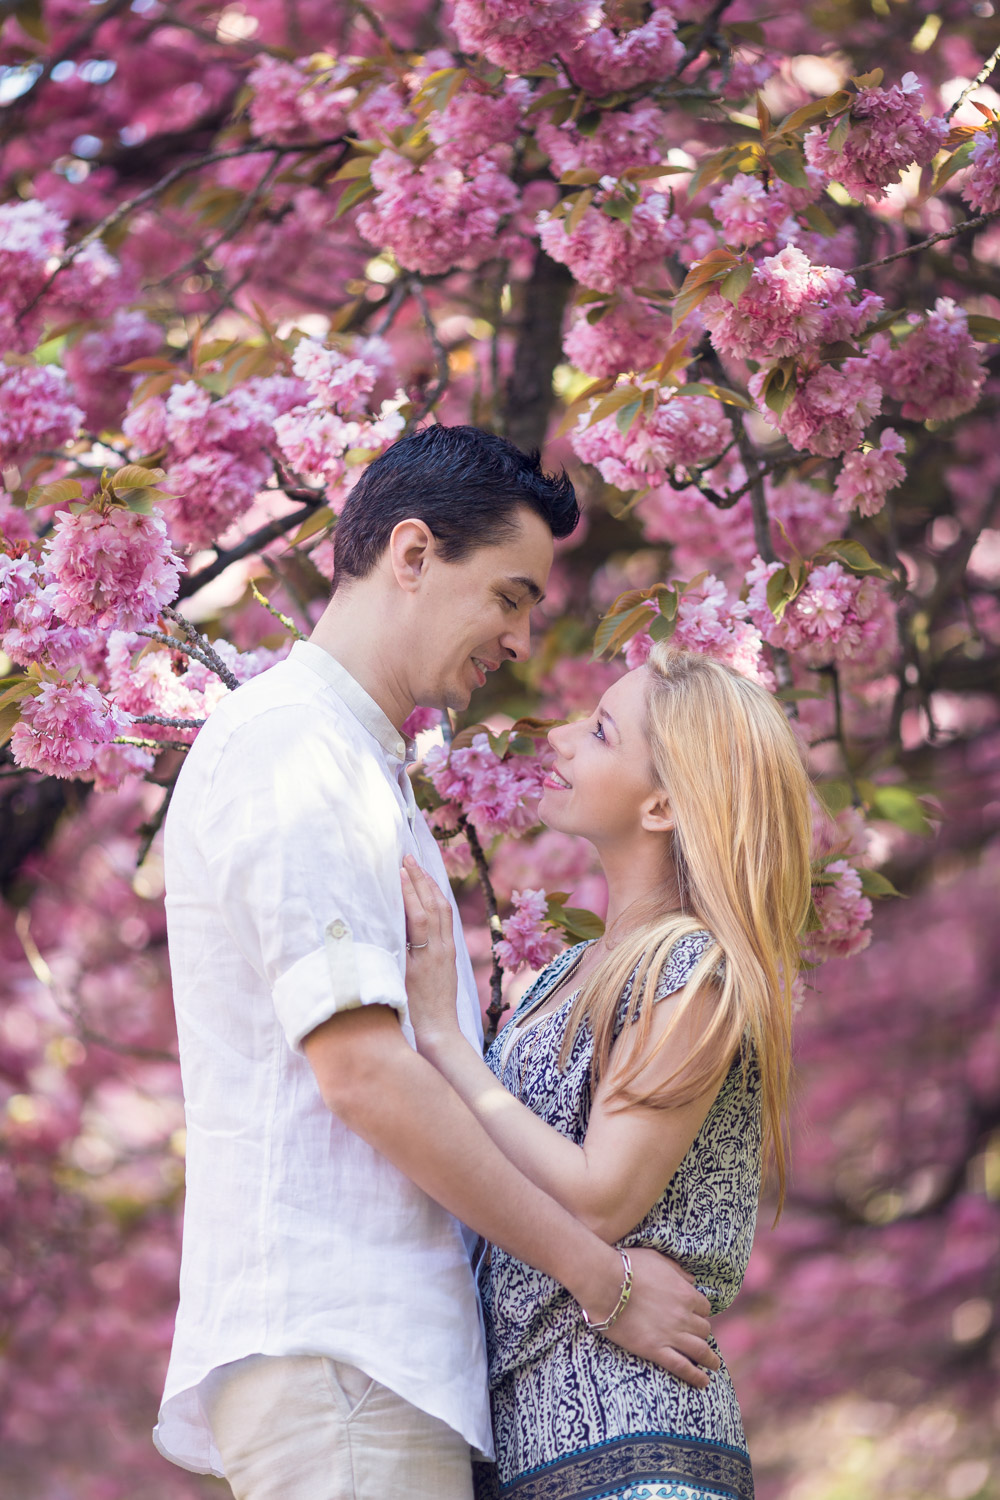 séance engagement romantique dans un parc avec les cerisiers en fleurs